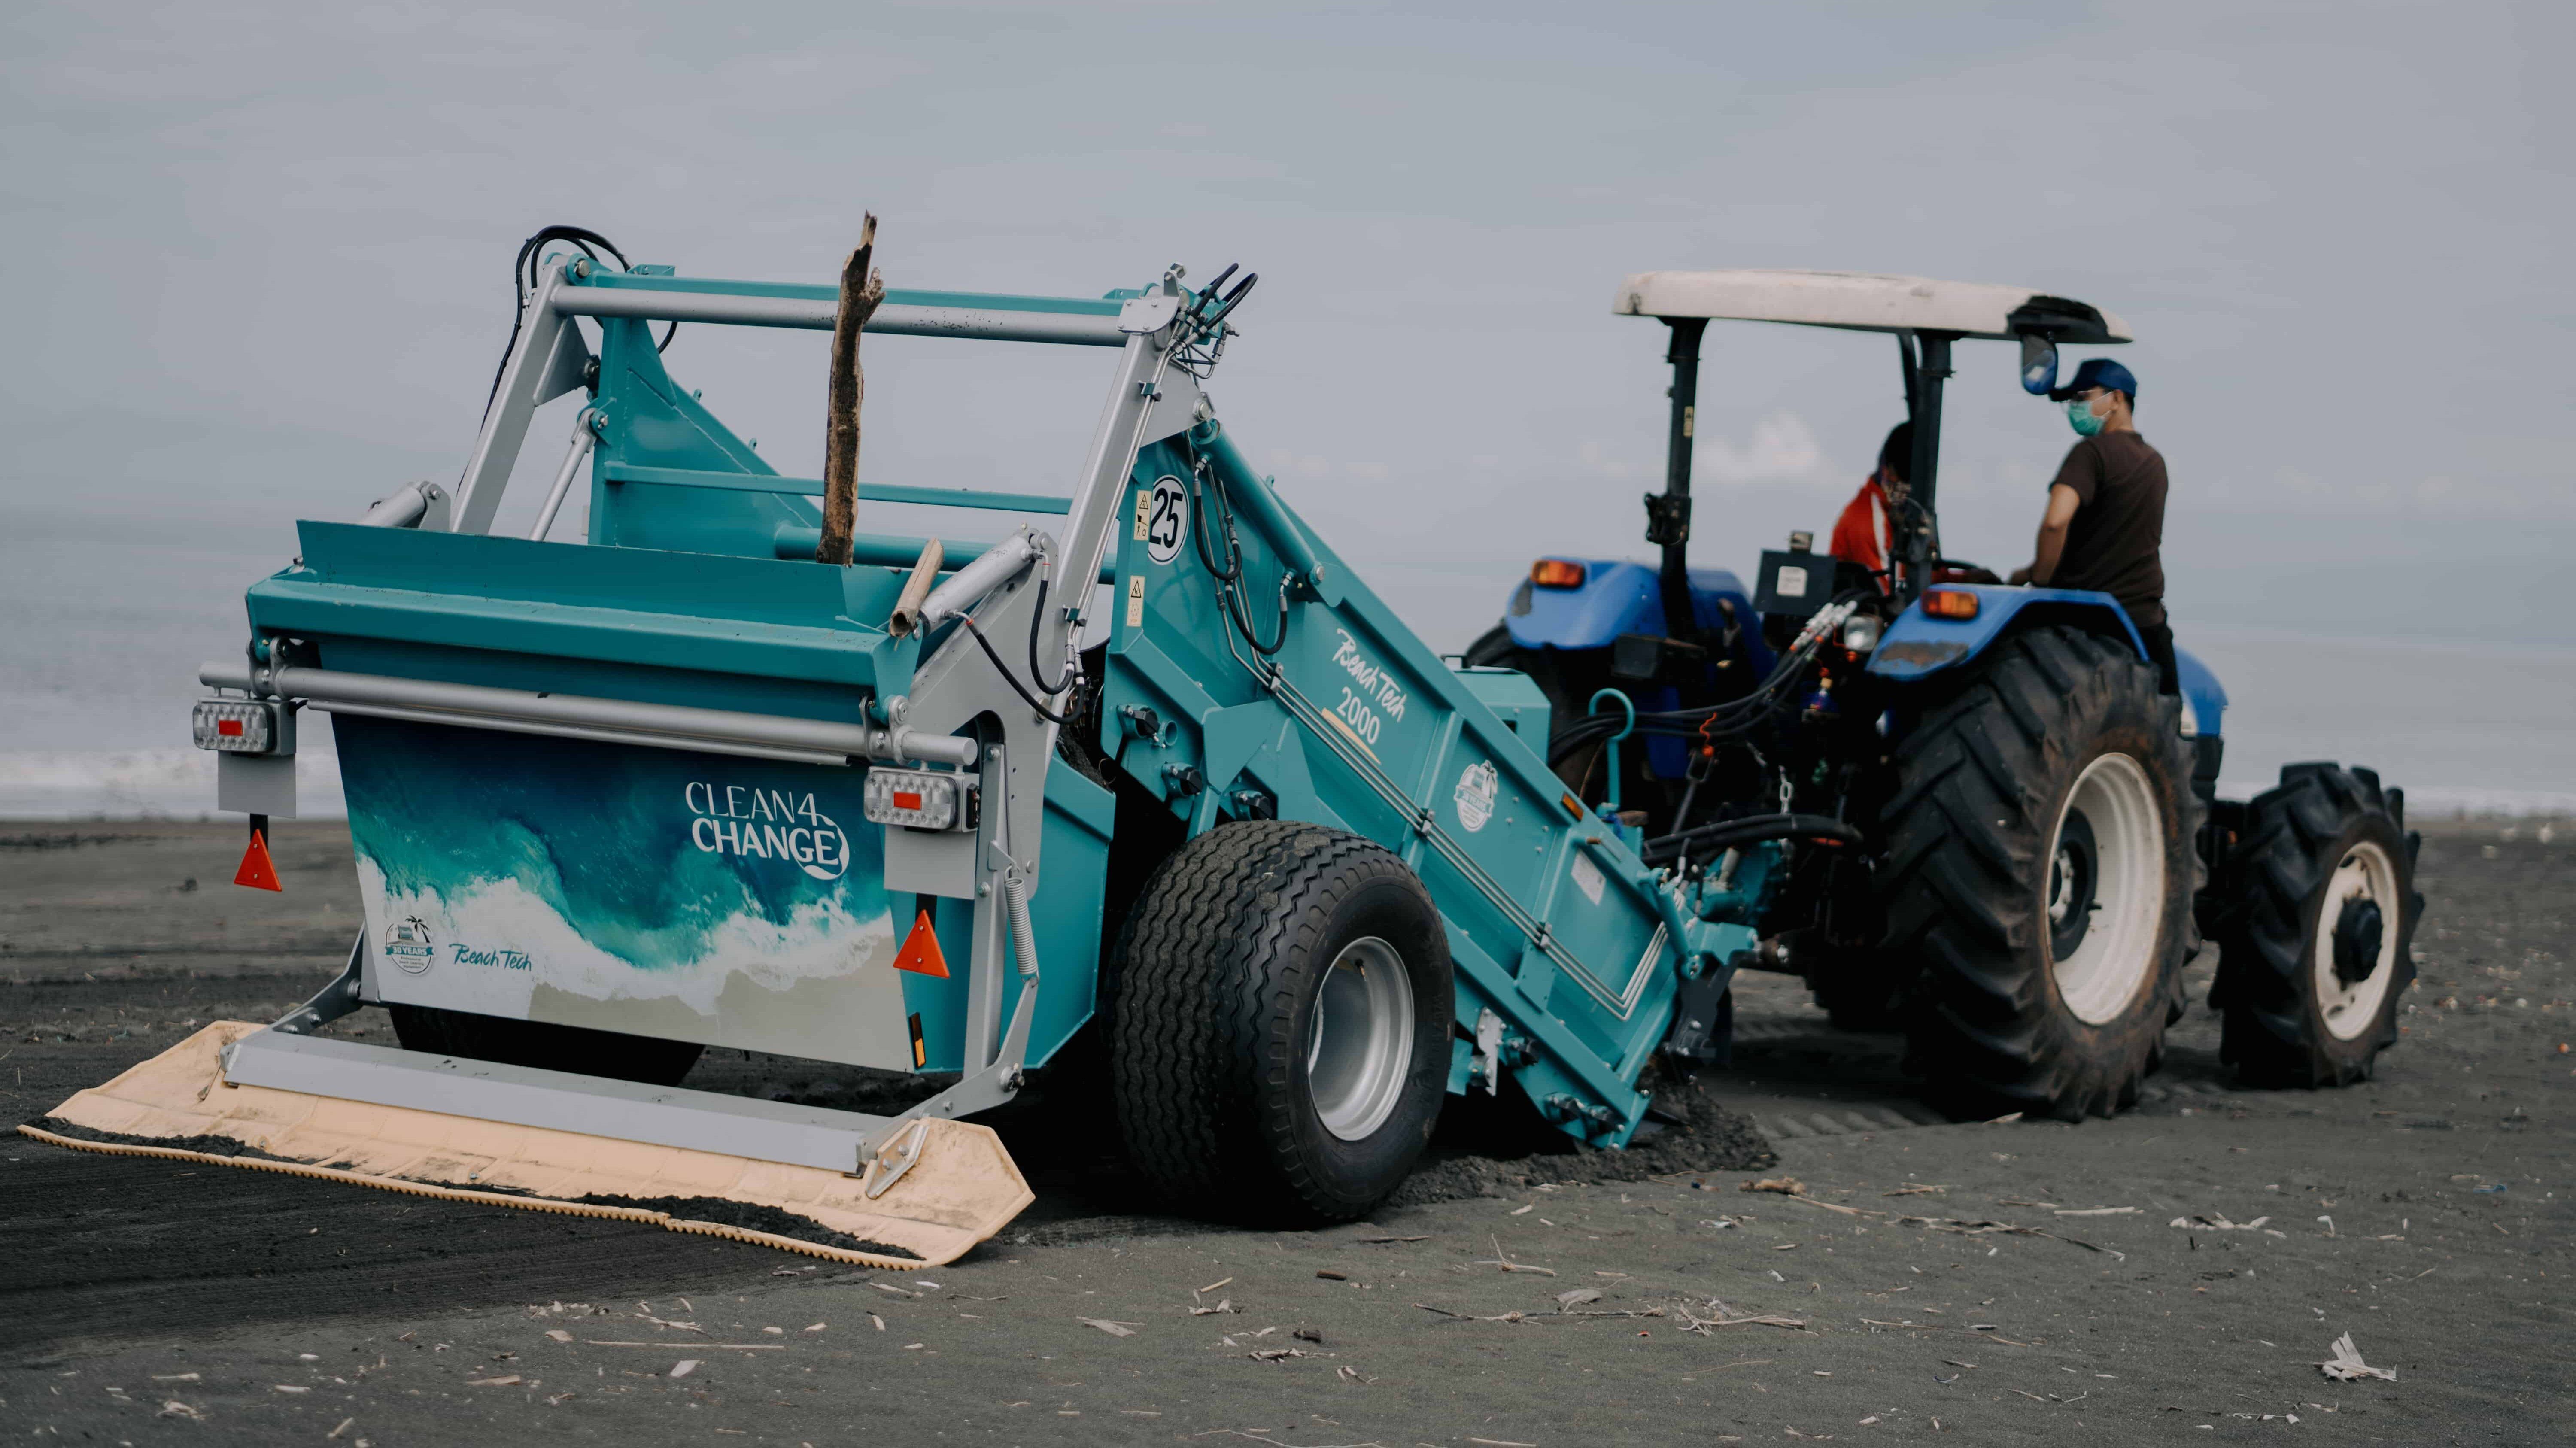 Le BeachTech a apporté son aide, dans le cadre du Projet STOP, lors d'une opération de nettoyage des plages, à Jembrana, sur la côte nord-ouest de Bali.